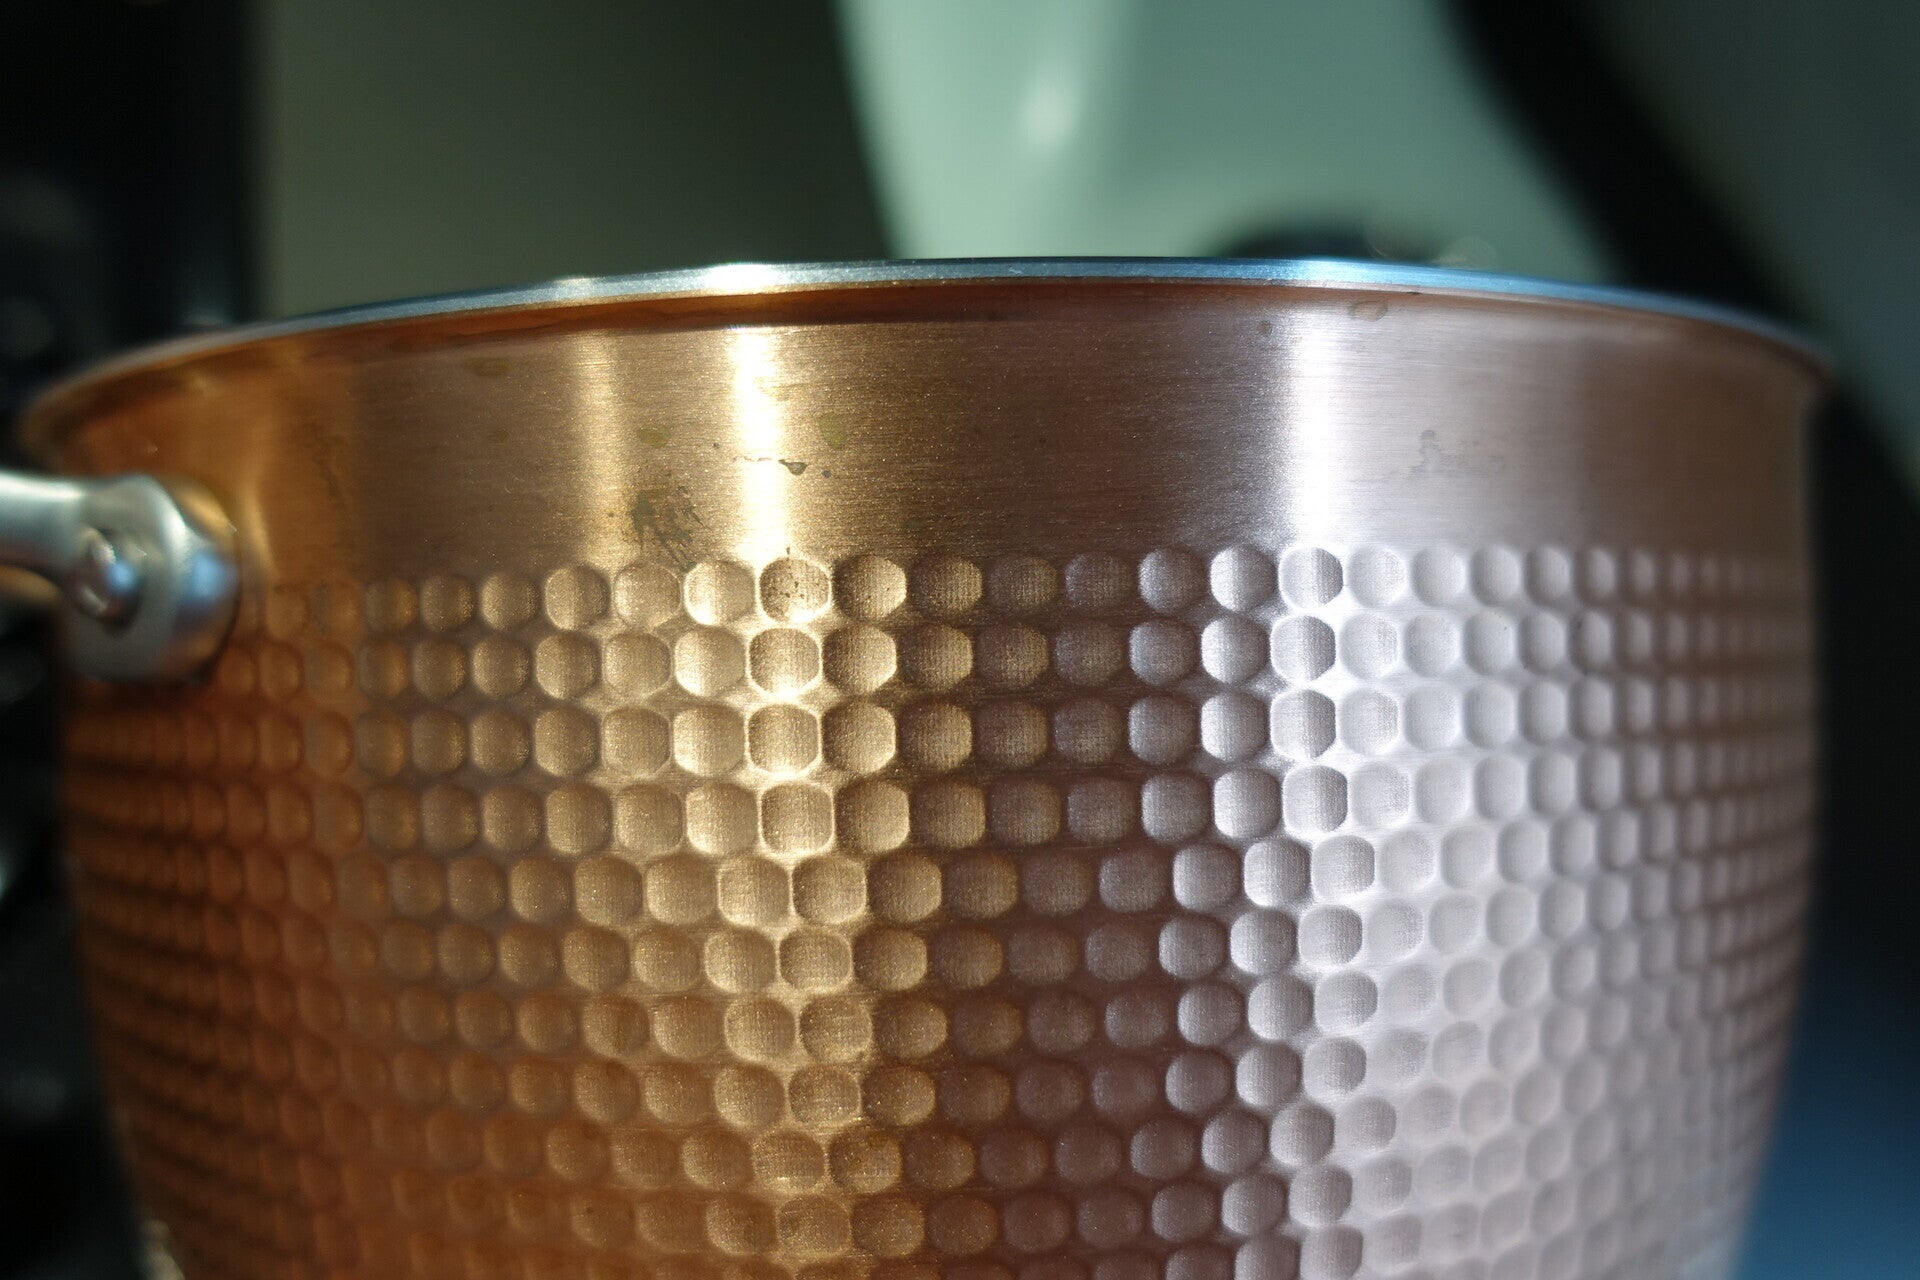 KitchenAid Design Series Blossom Stand Mixer bowl detail